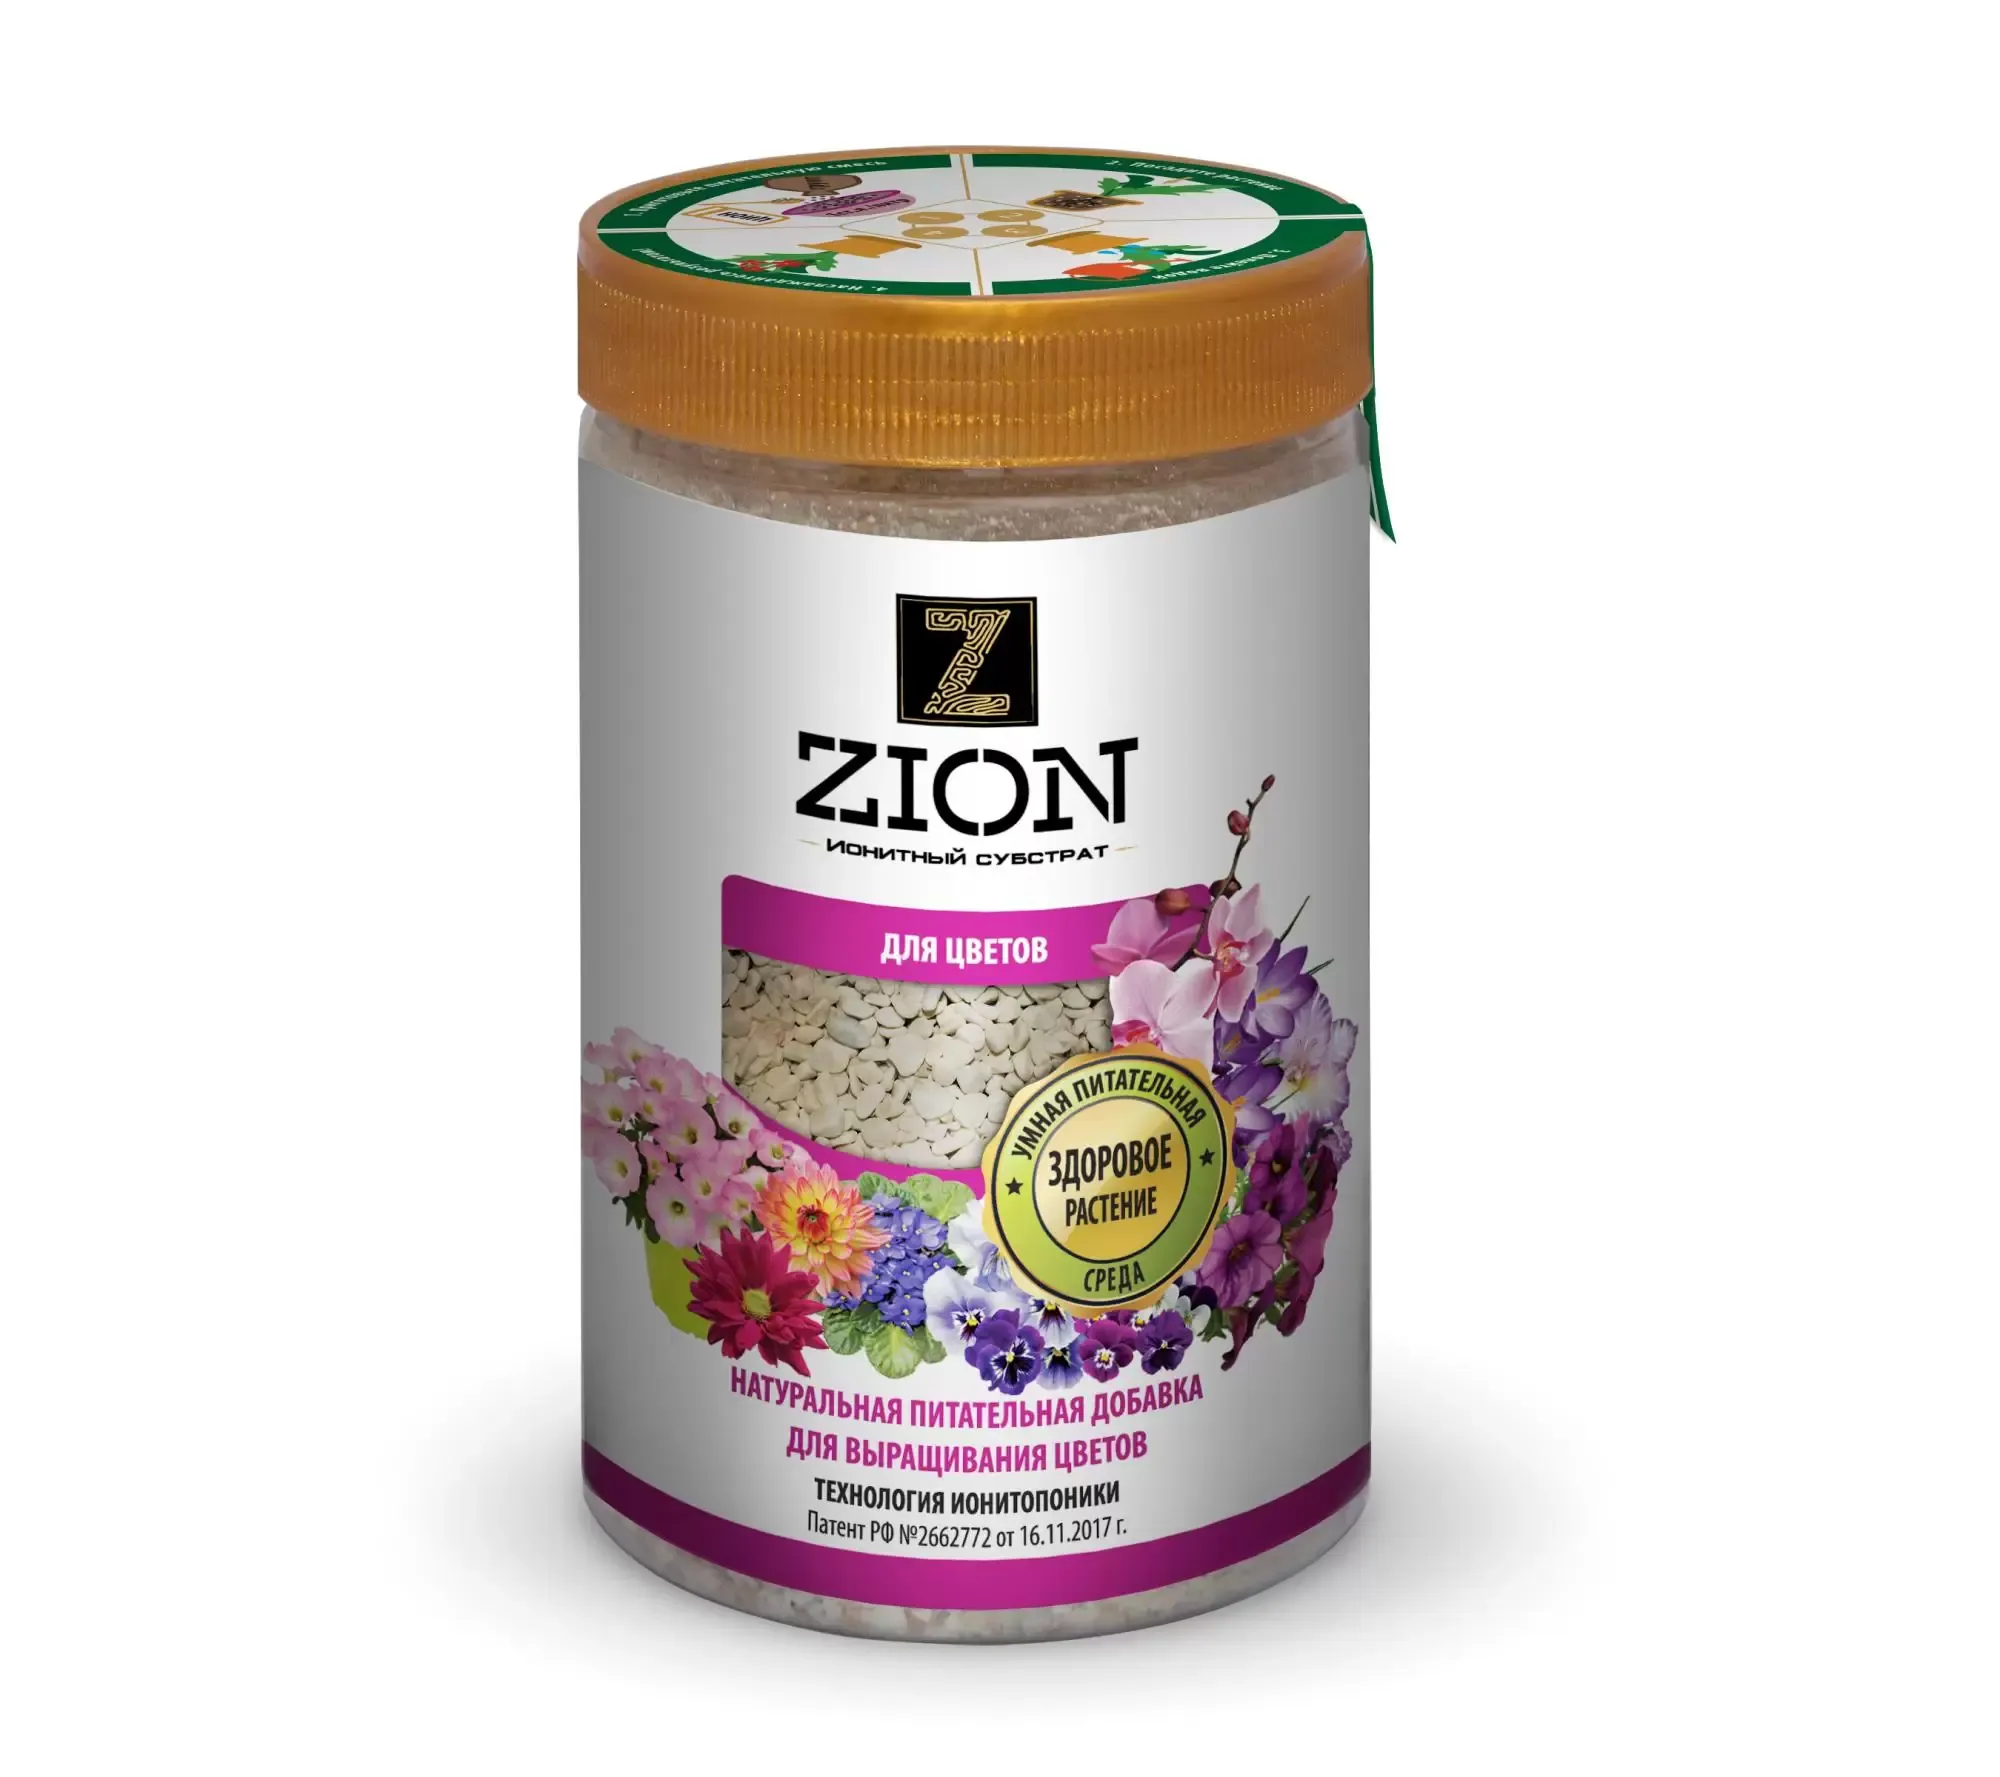 Питательная добавка ZION для цветов, 700 гр